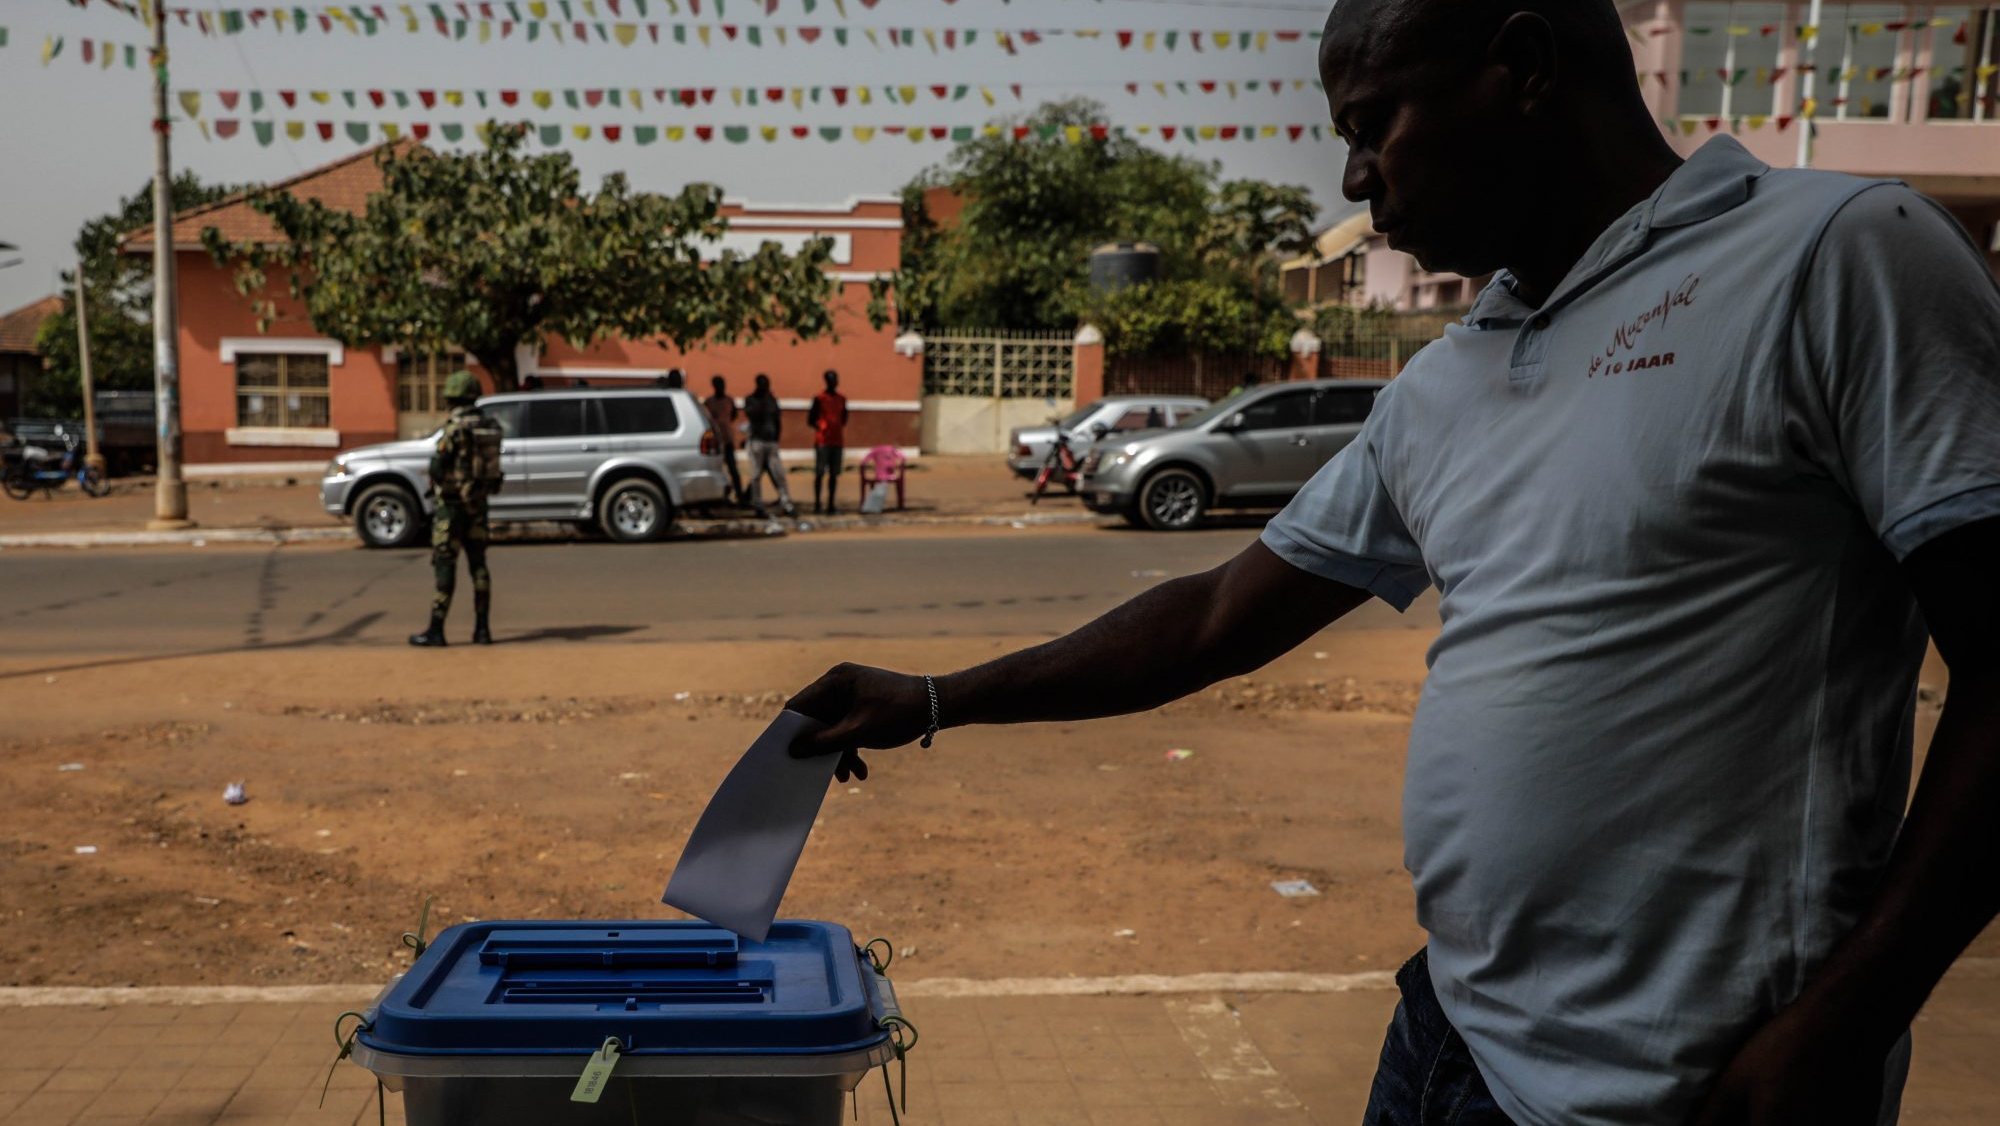 Nas eleições legislativas de 2019, Portugal prestou um apoio financeiro de 100.000 euros a Guiné-Bissau